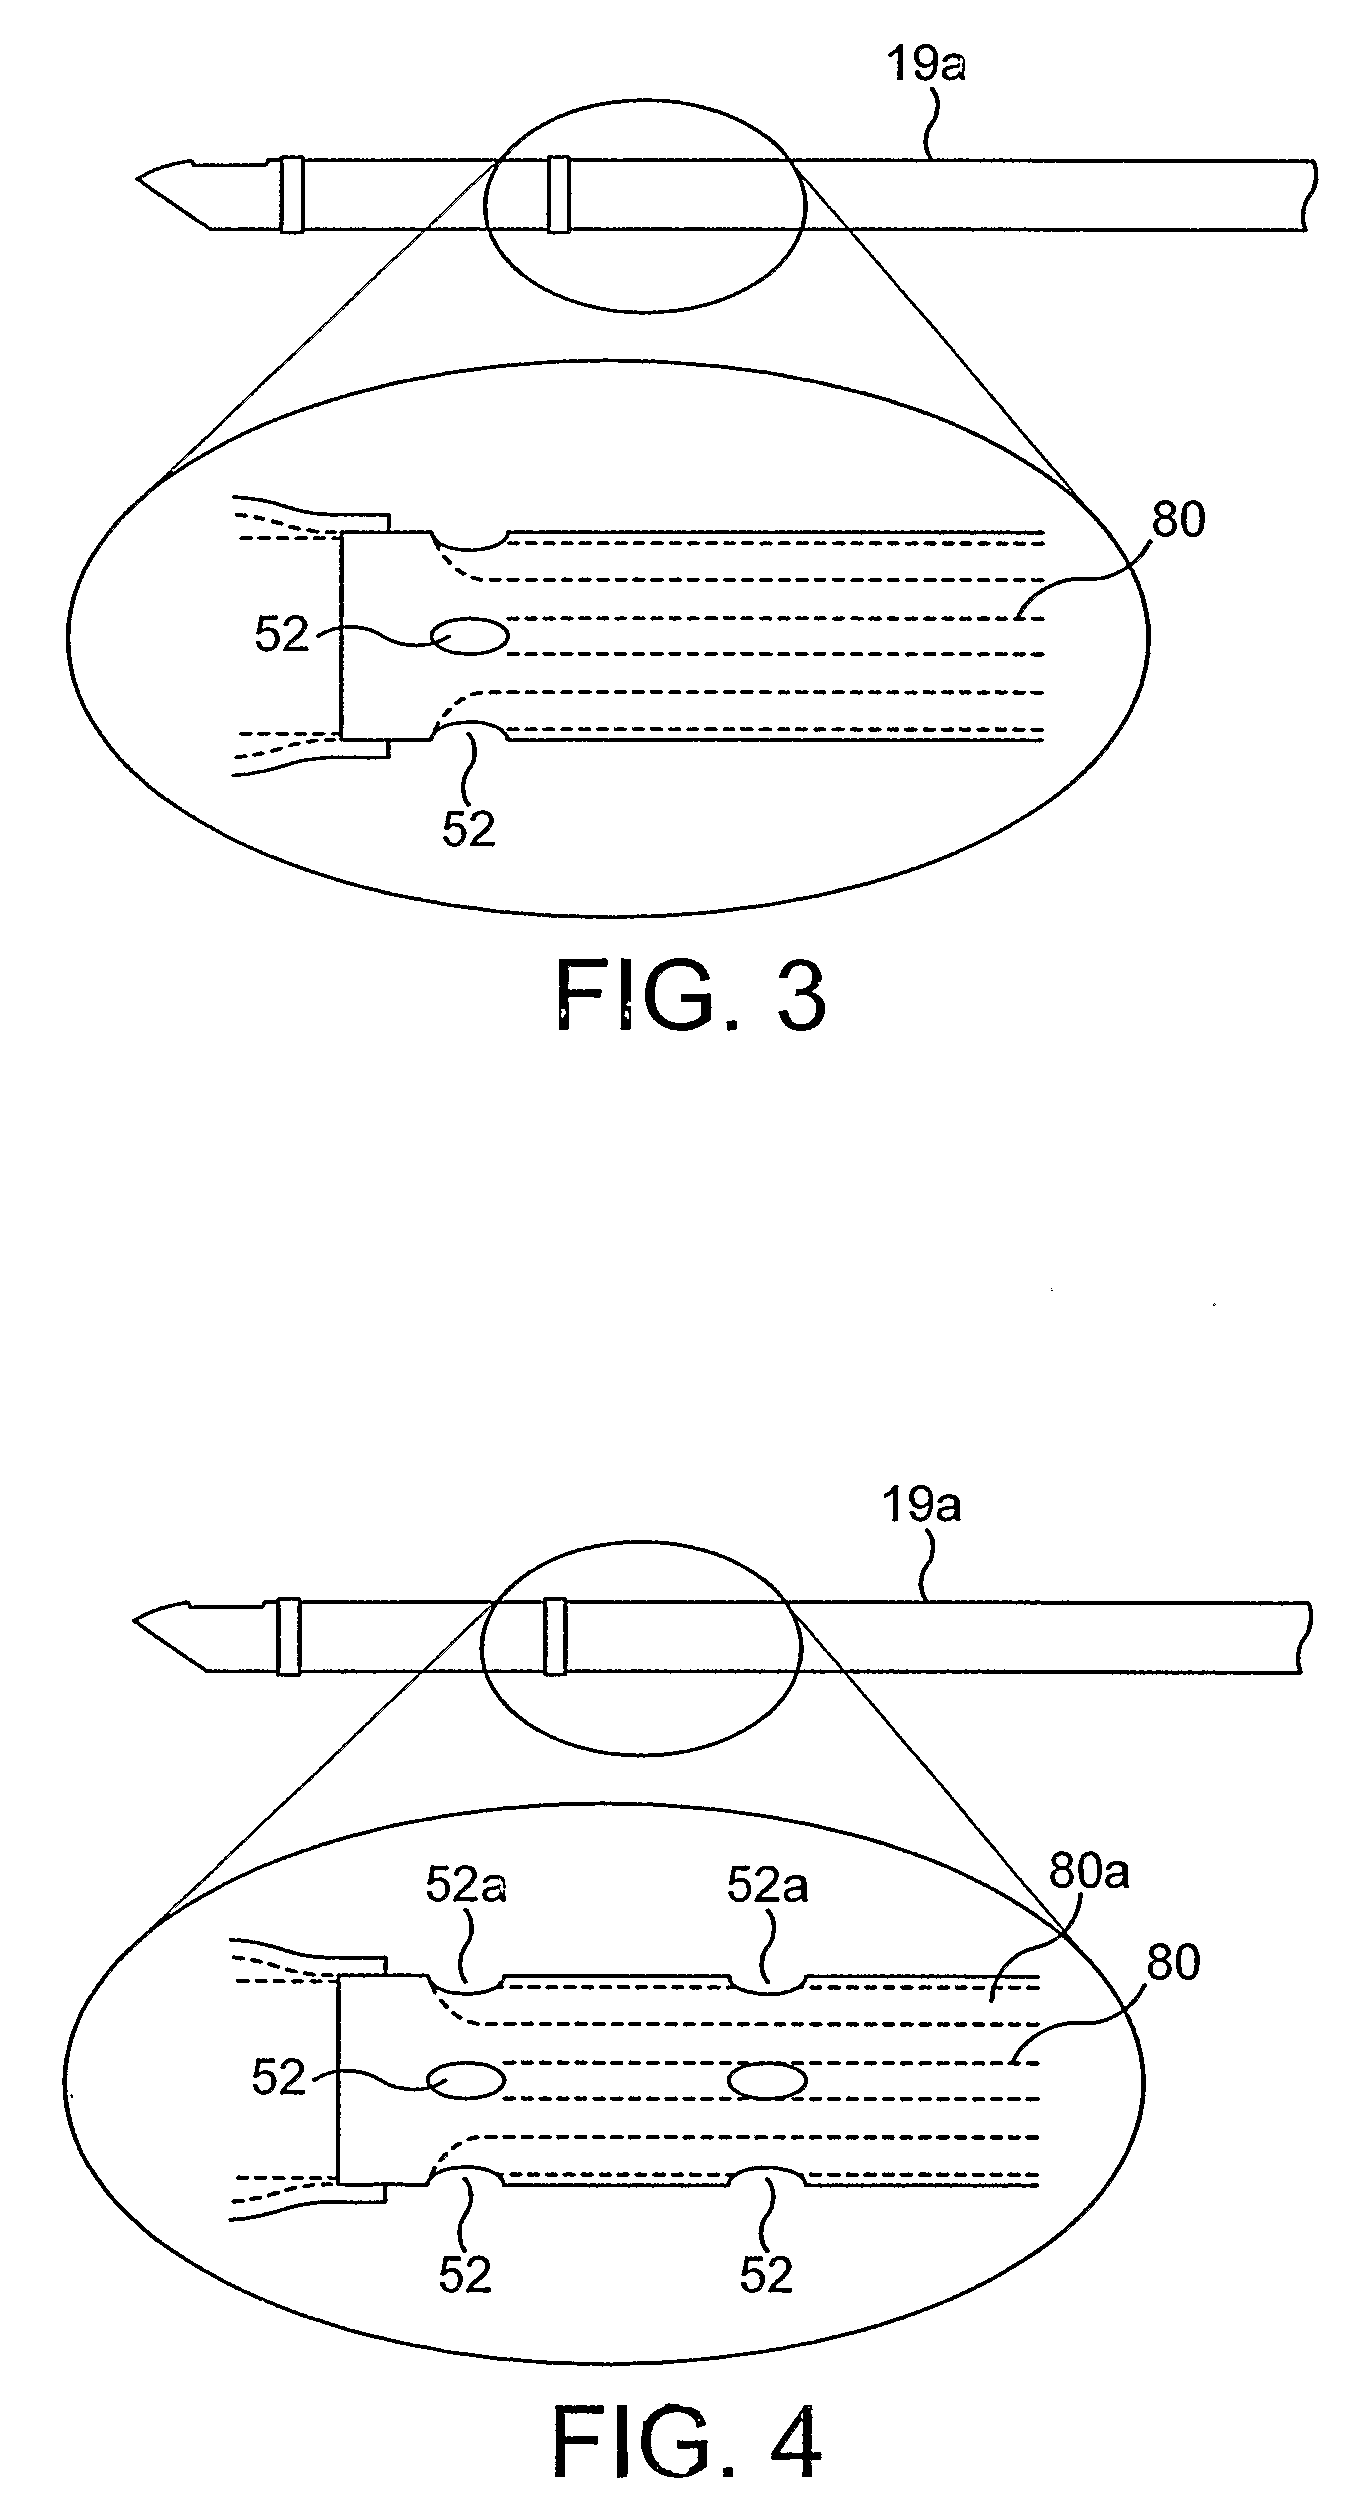 Artificial airway apparatus